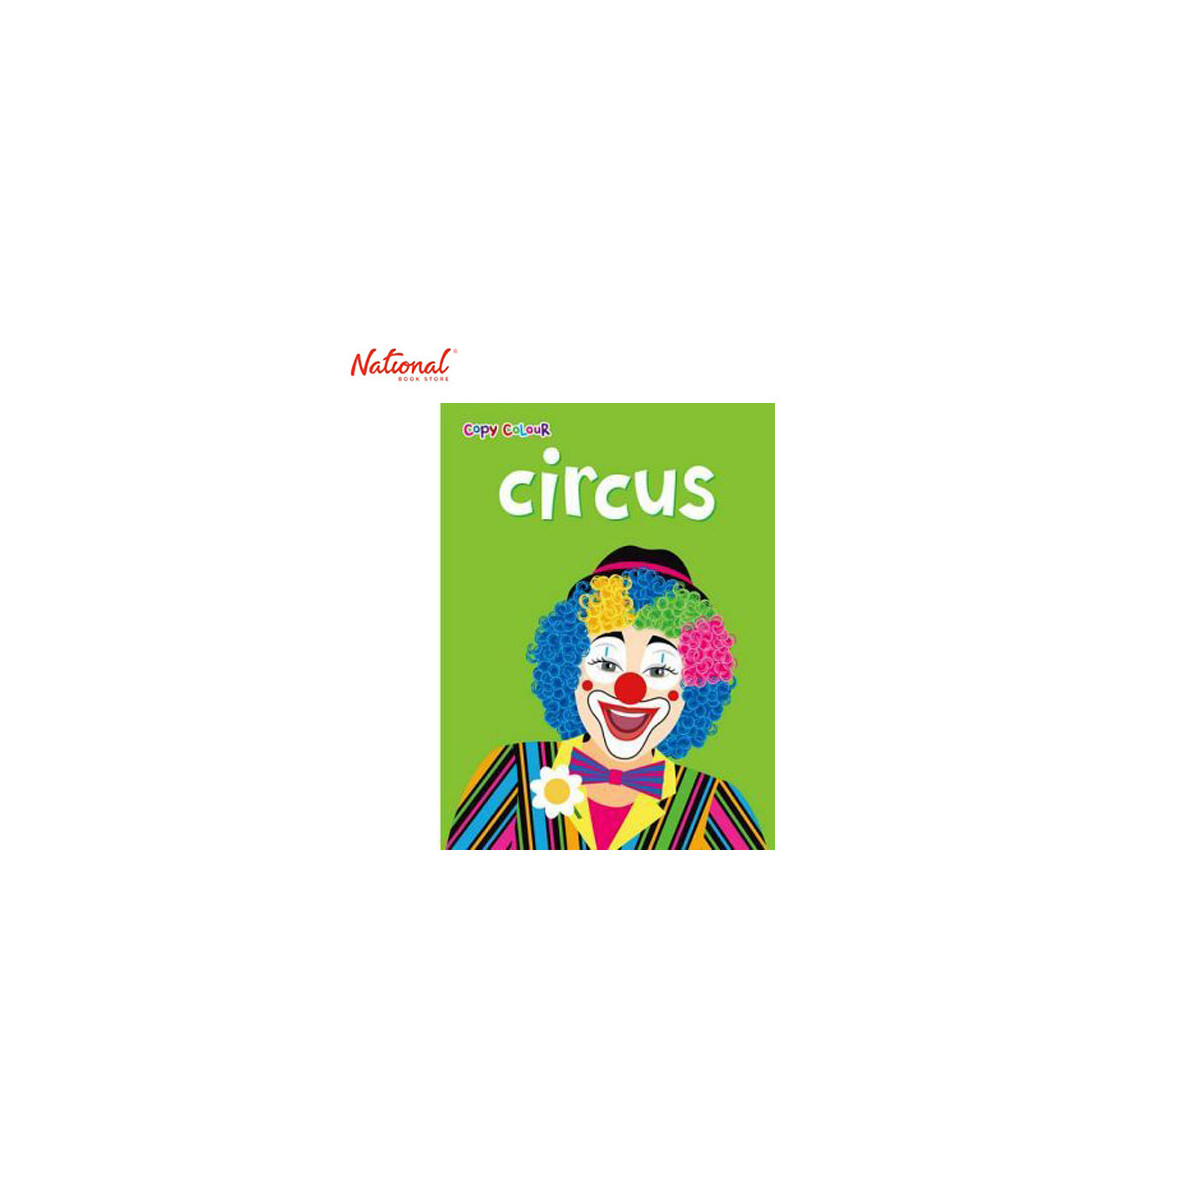 Circus Copy Colour Trade Paperback